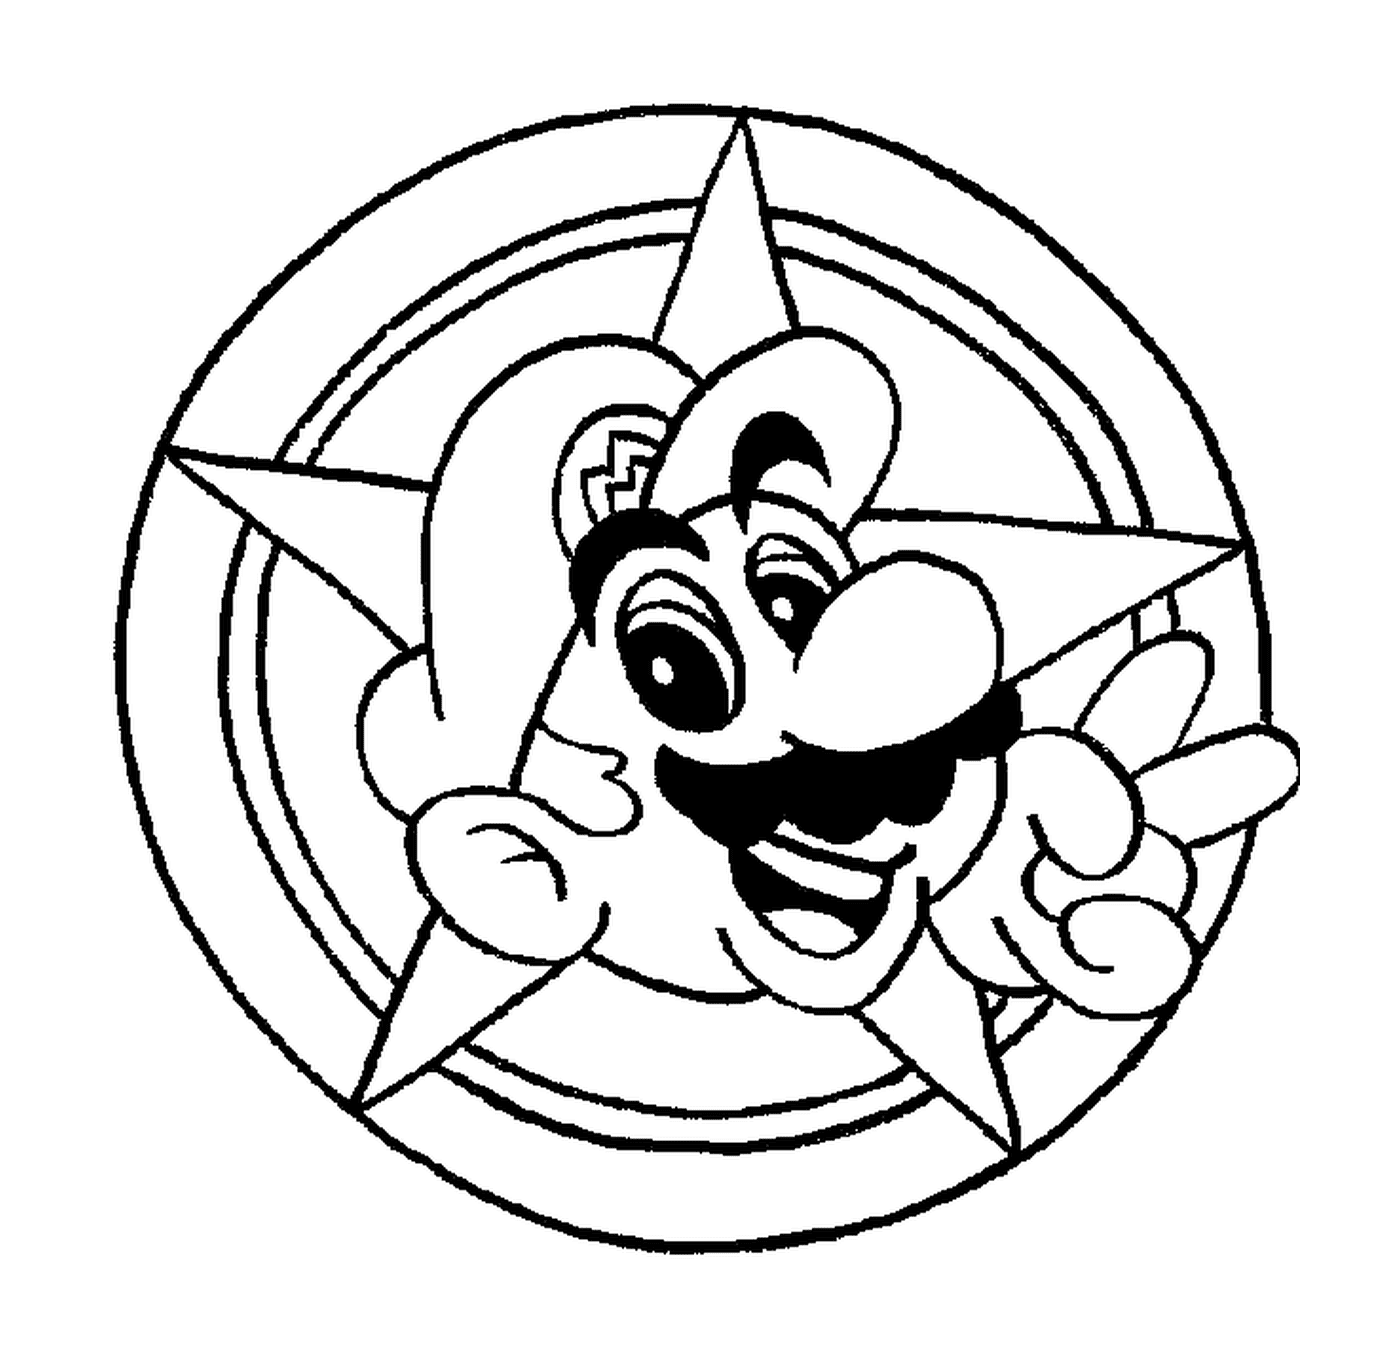  La testa di Mario in cerchio 